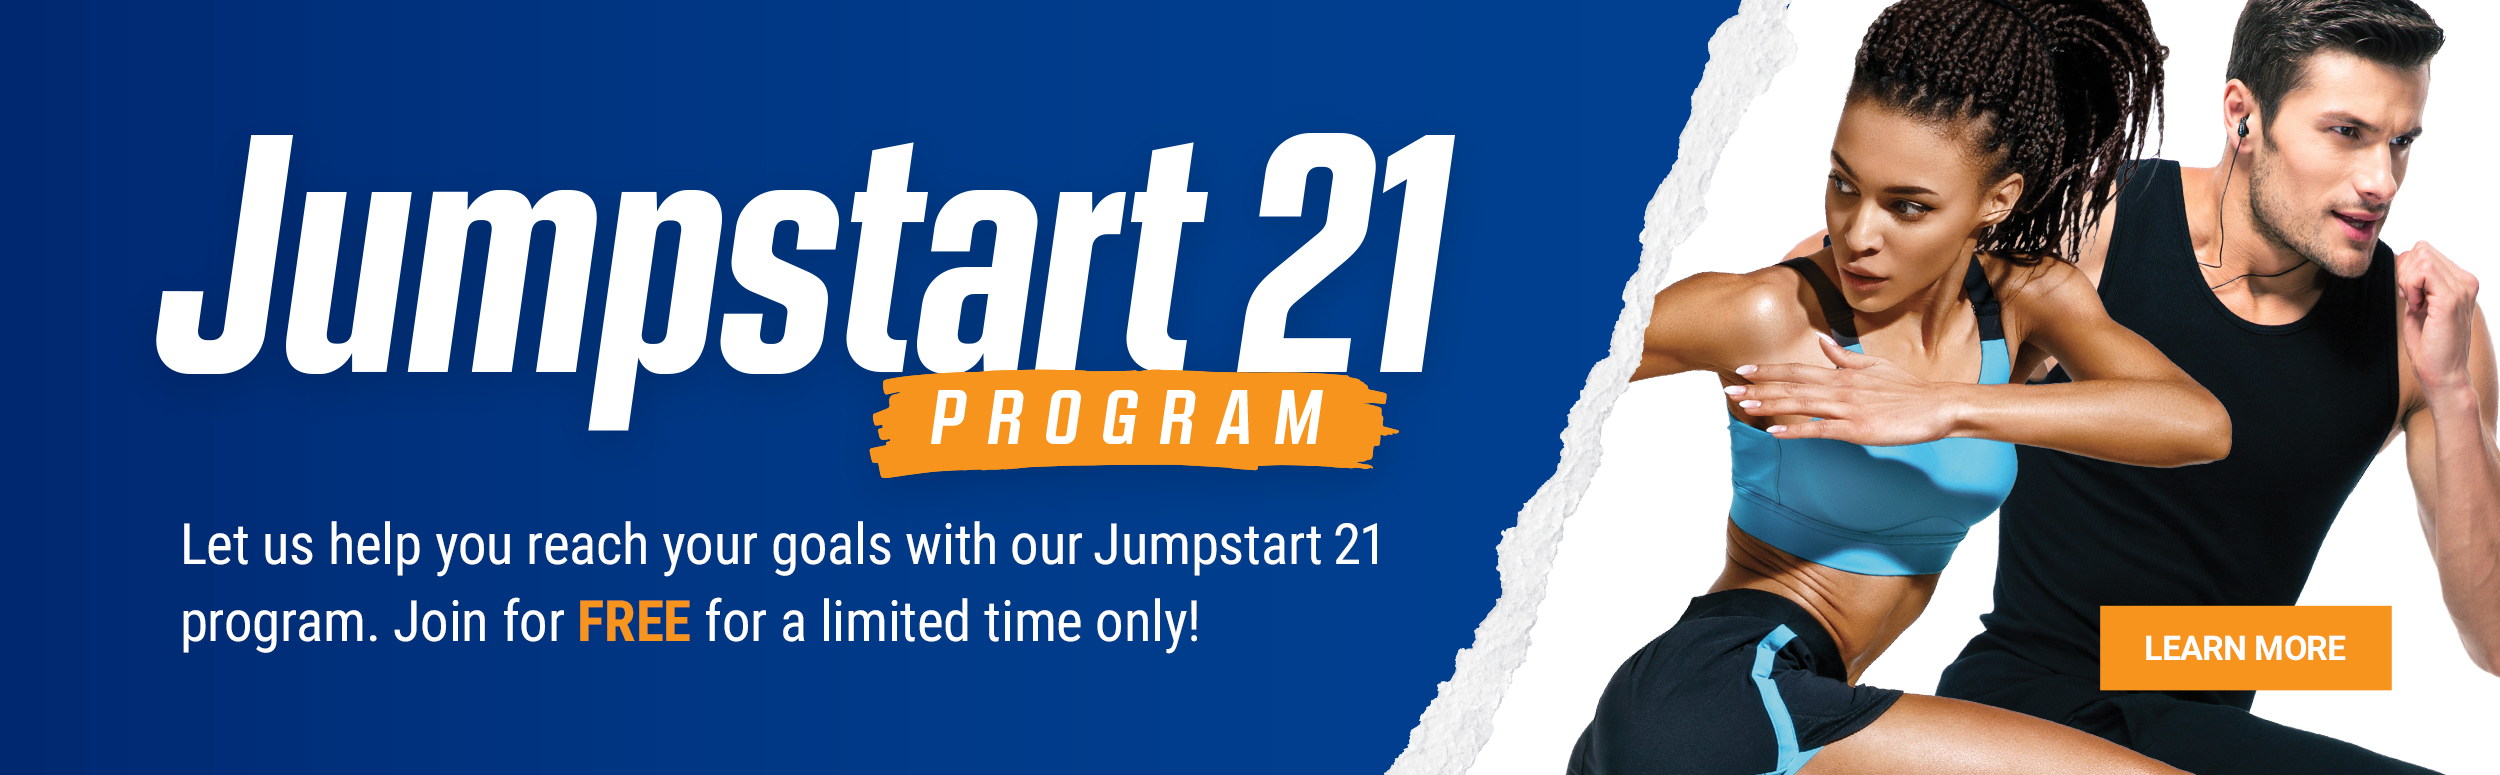 Jumpstart 21 banner